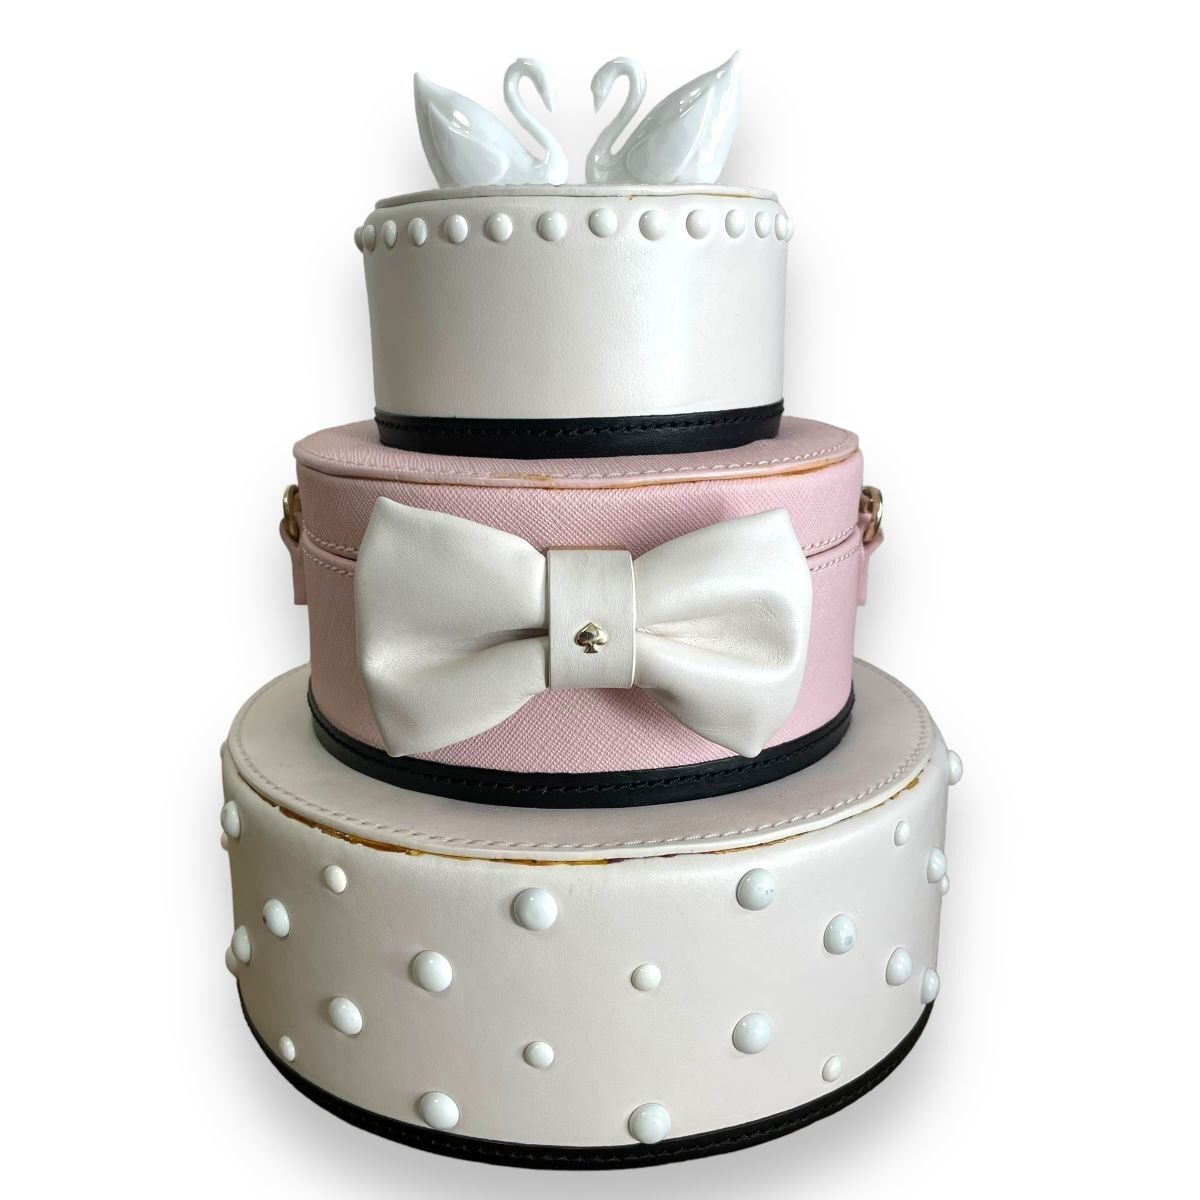 美品 kate spade new york ケイトスペード スワン リボン ウェディングケーキ型 ハンドバッグ ワンショルダー ベージュ×ピンク